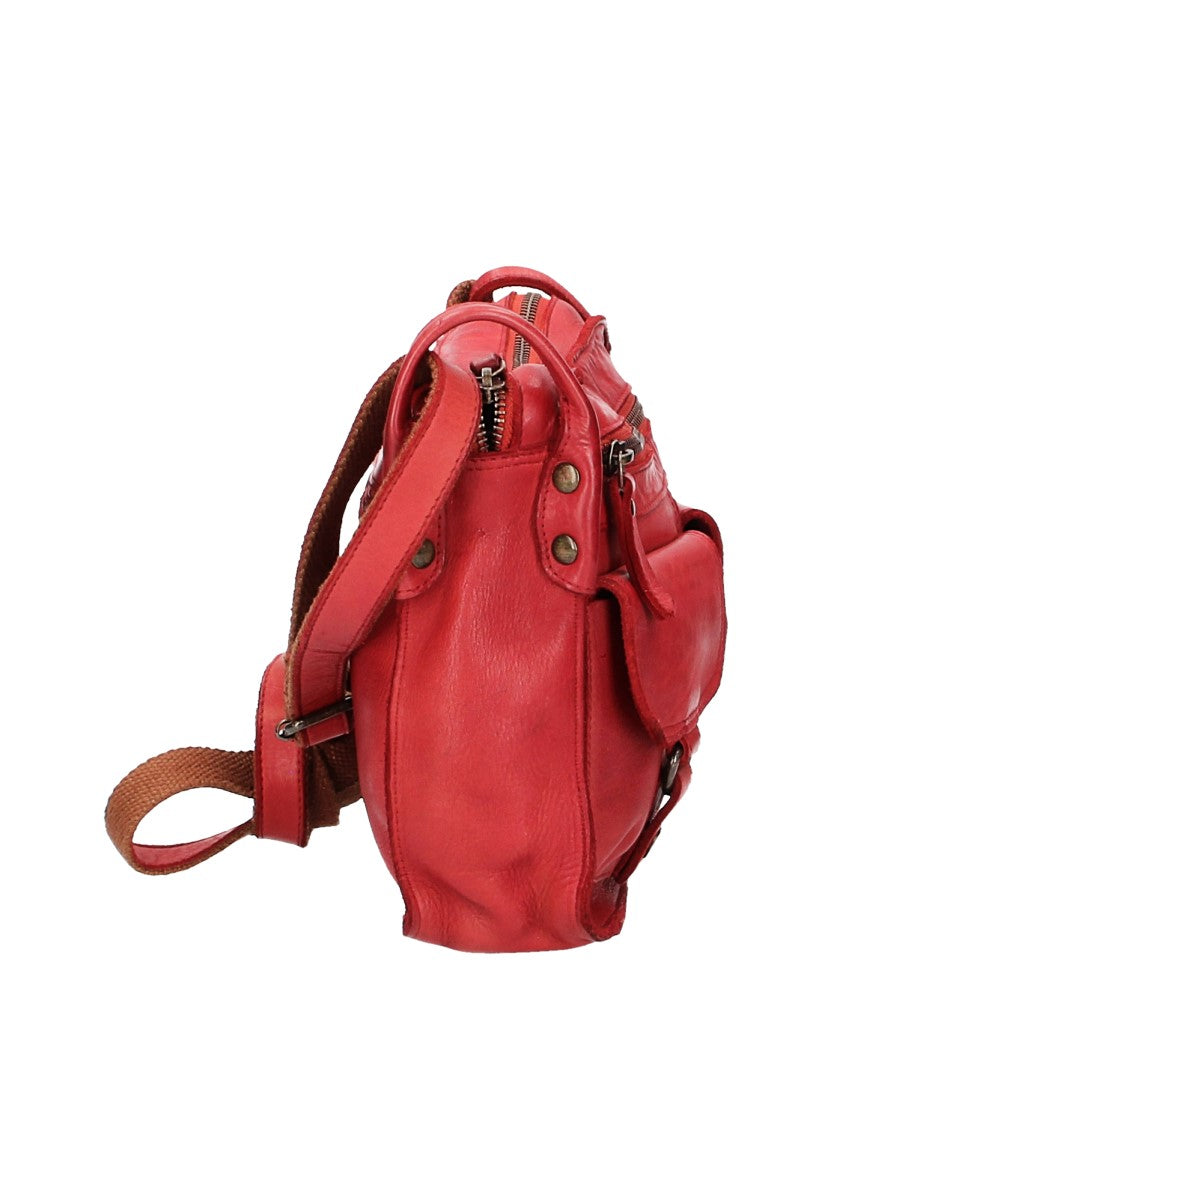 Umhängetasche in Rot mit Reißverschluss und zwei Vortaschen